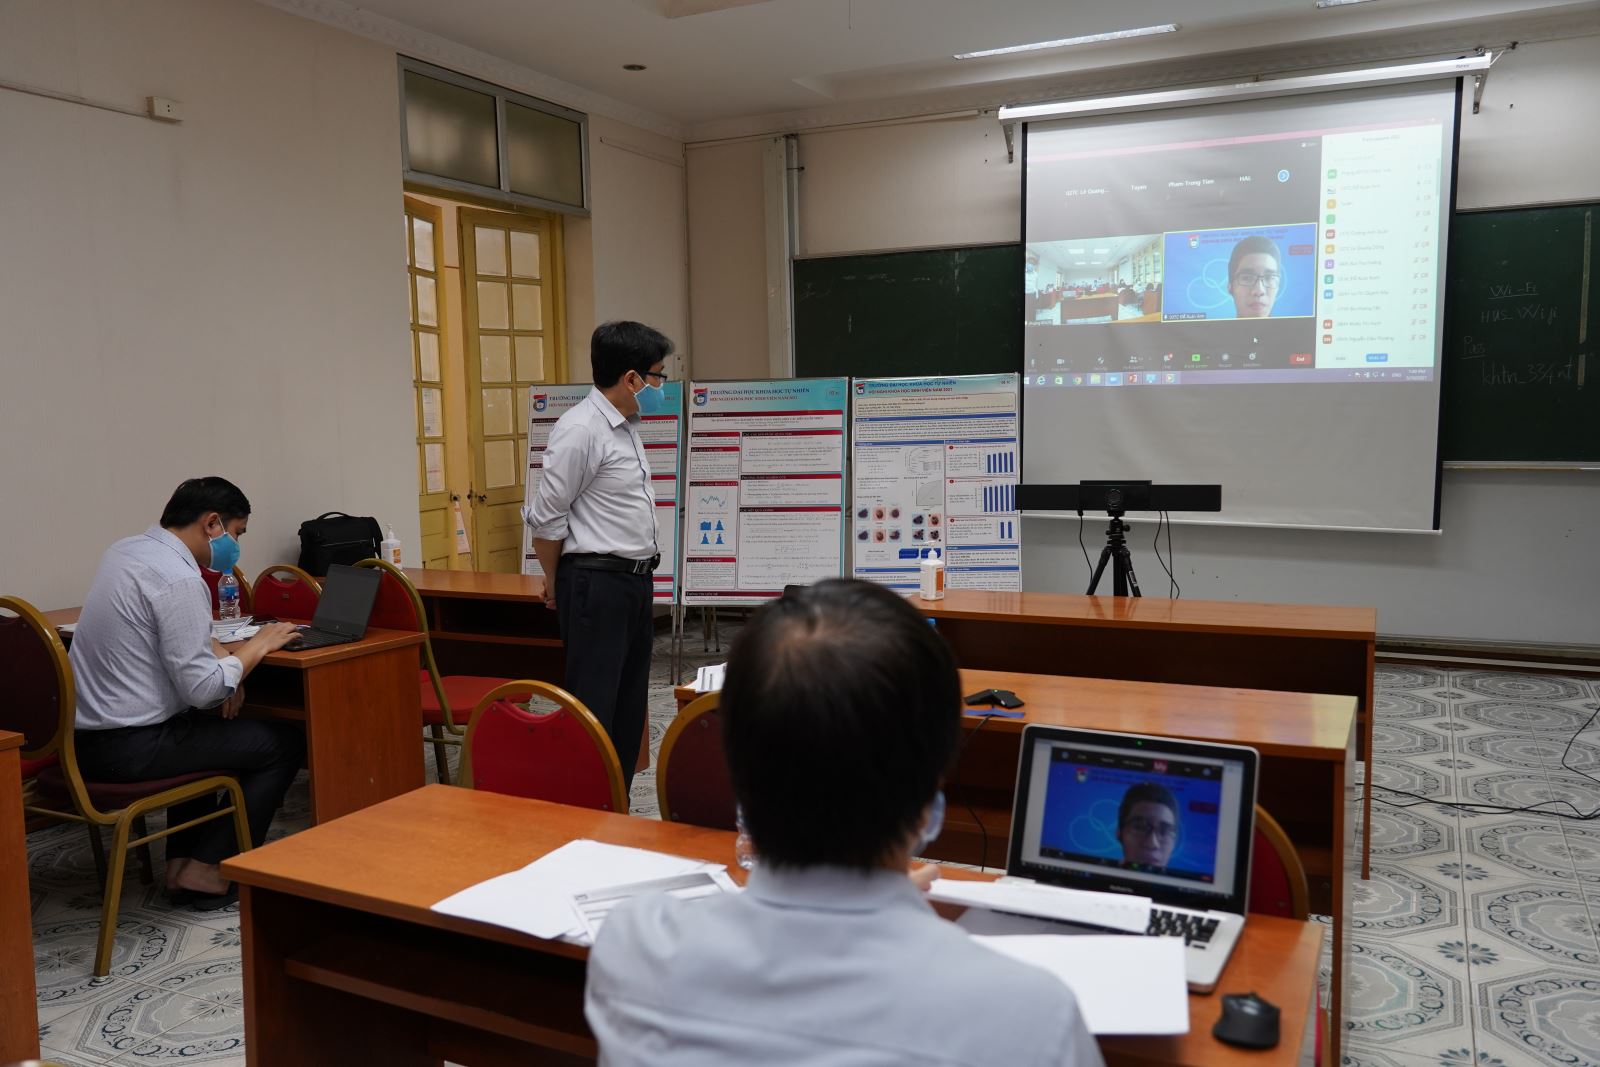  Trường Đại học Khoa học Tự nhiên (ĐH Quốc gia Hà Nội) tổ chức chấm báo cáo khoa học của sinh viên bằng hình thức trực tuyến. Ảnh: Hoài Thương